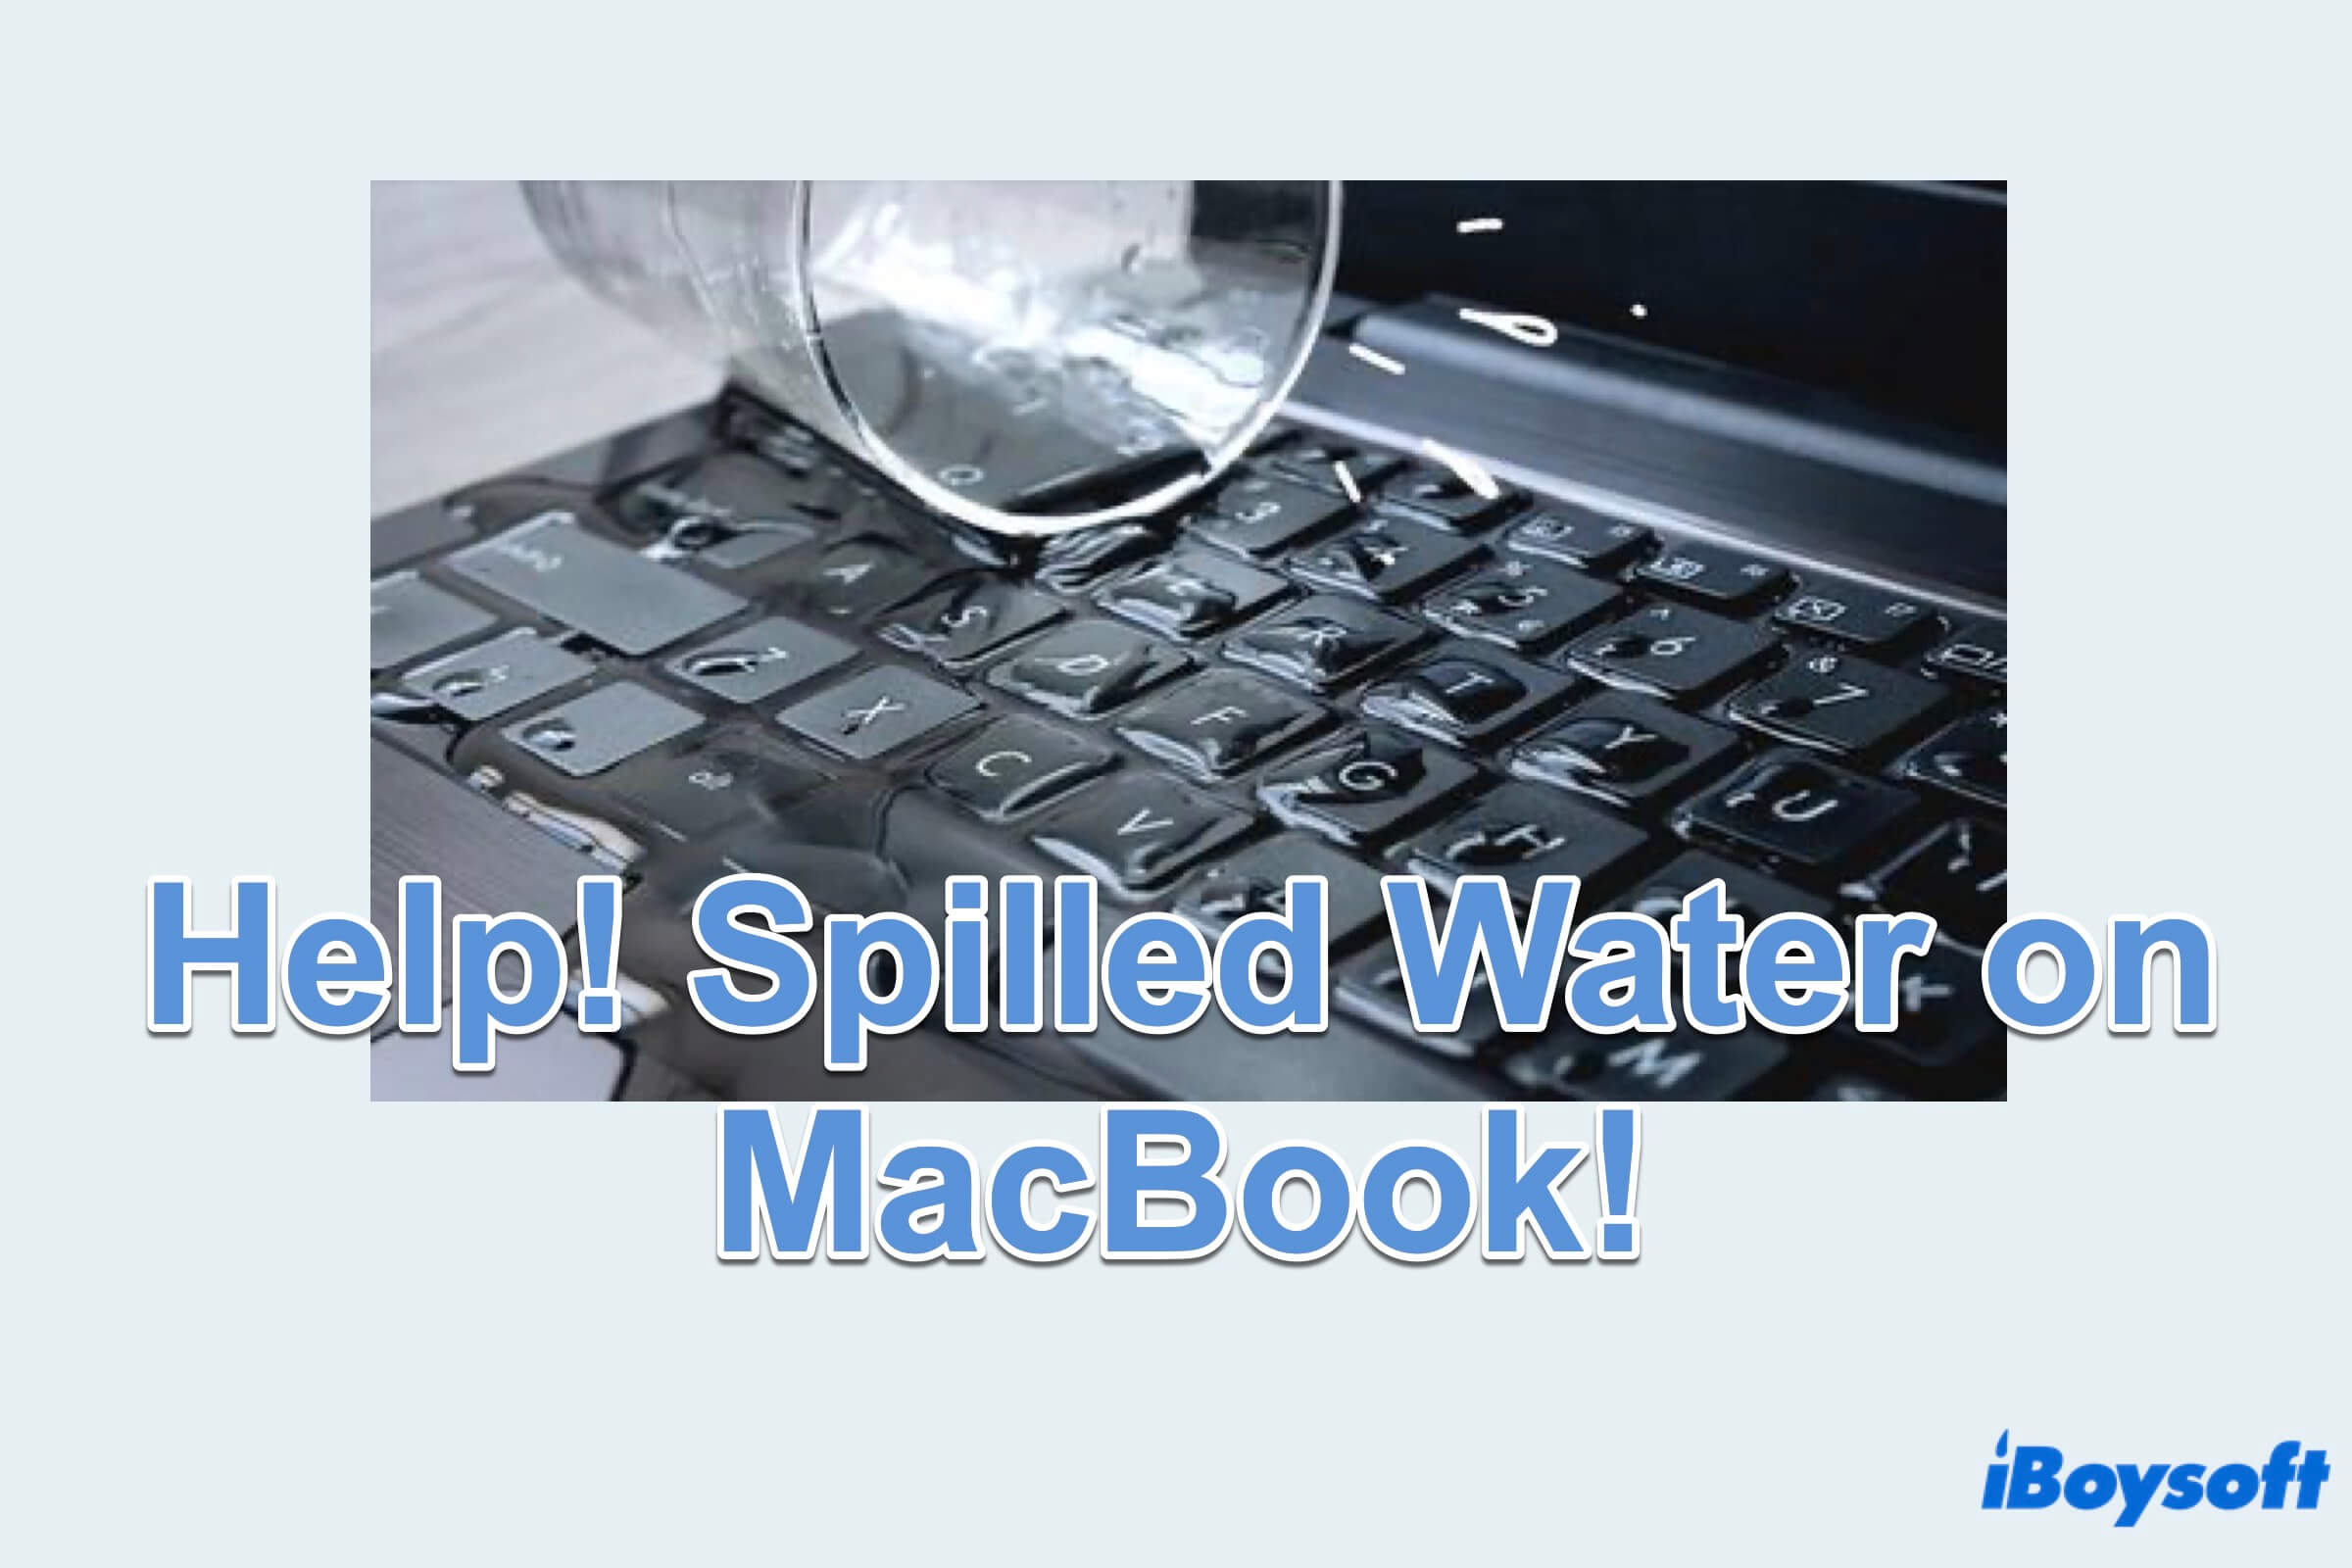 Résumé du renversement d'eau sur MacBook